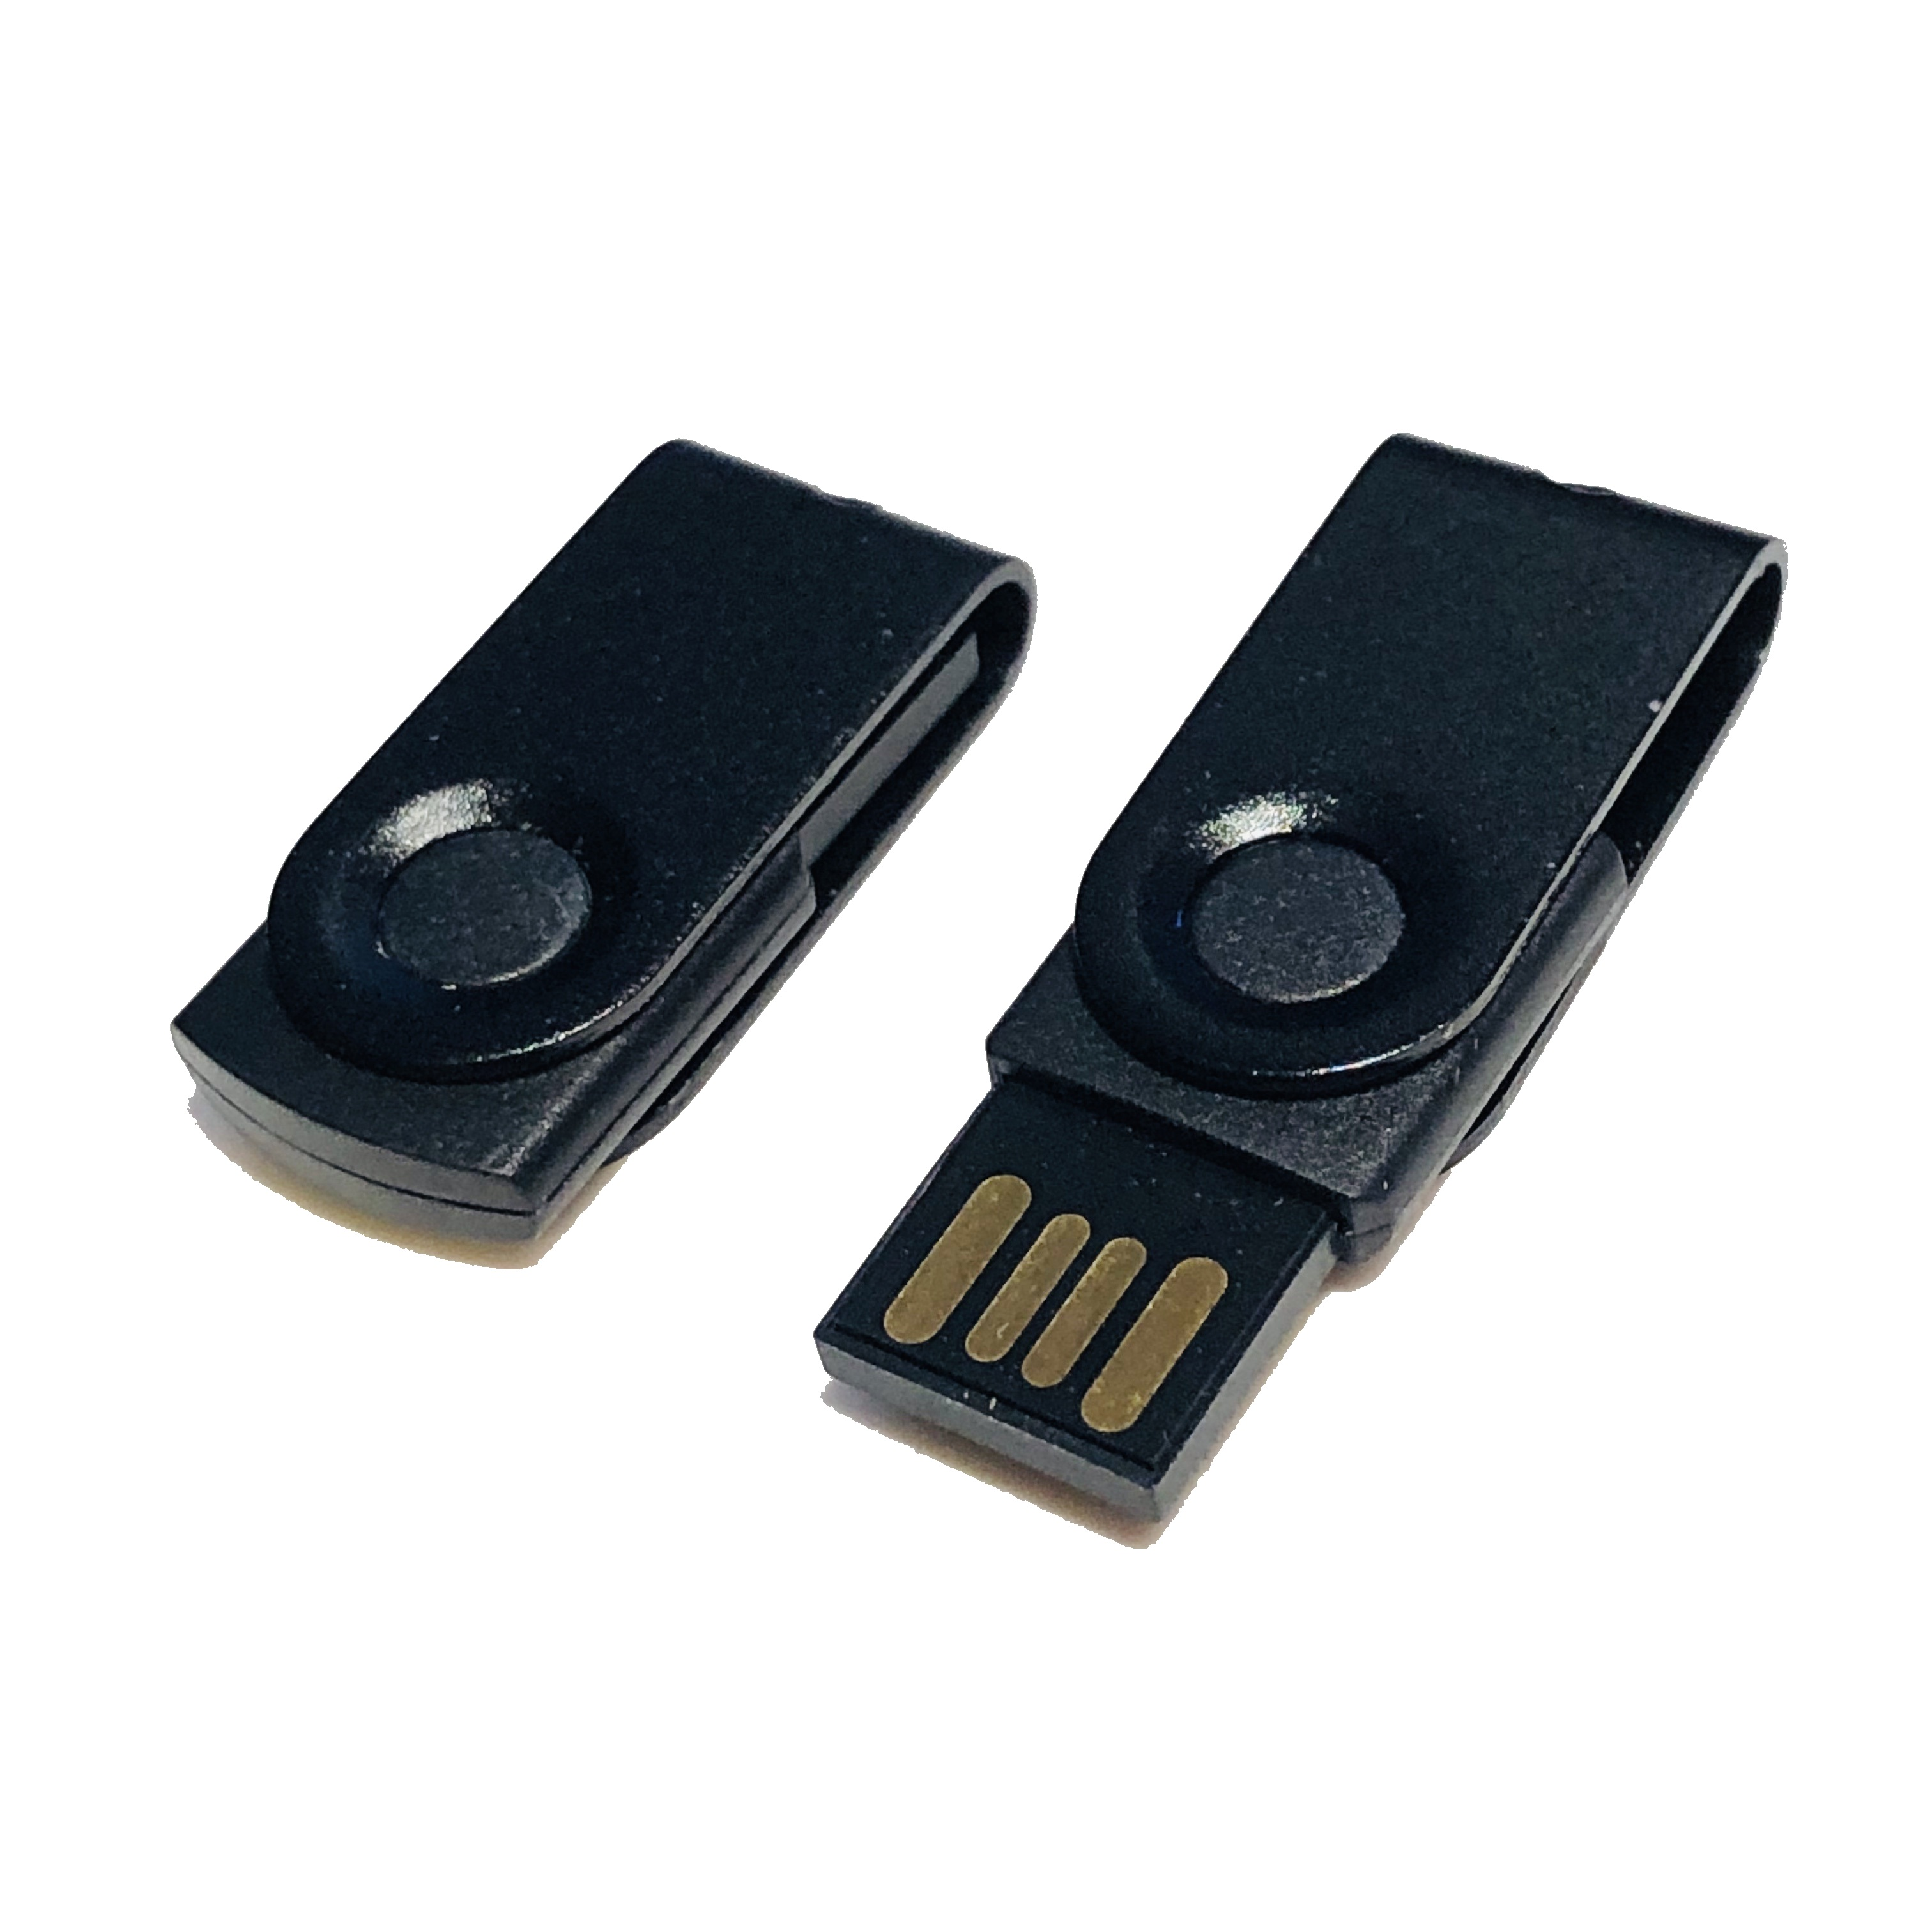 GERMANY GB) MINI-SWIVEL (Schwarz-Schwarz, USB-Stick ® USB 1